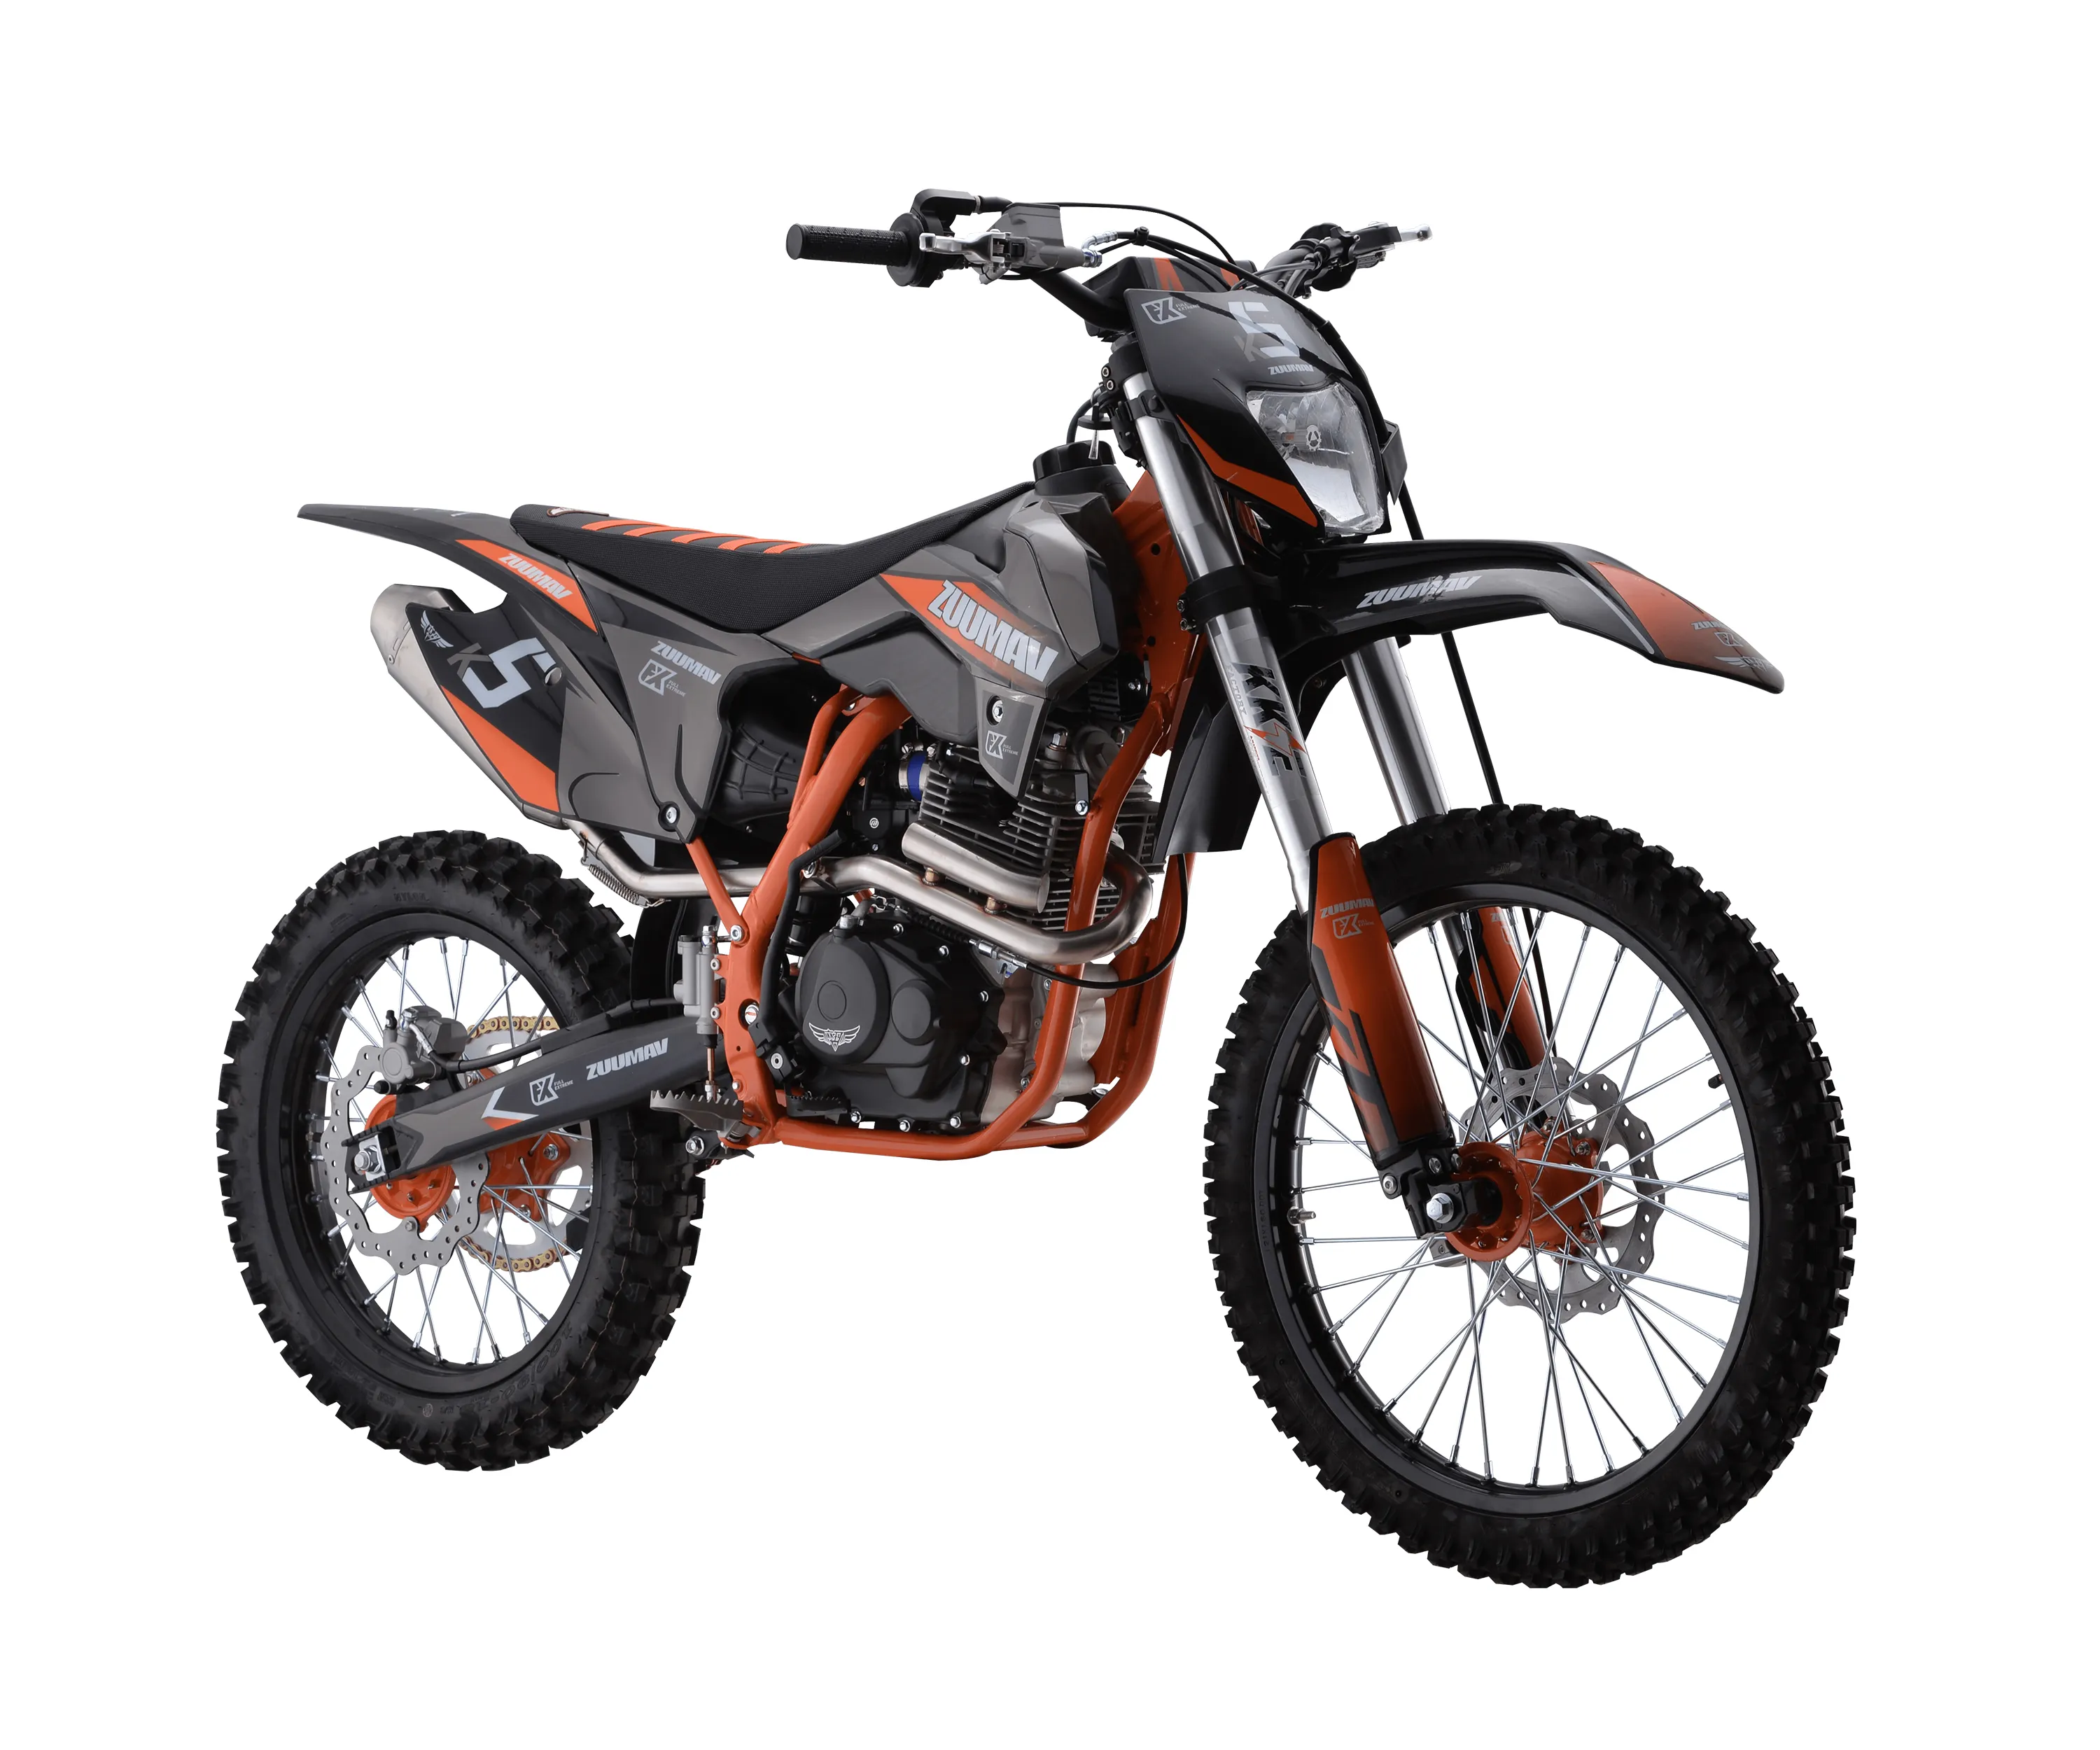 Fabriek-Directe Verkoop Zuumav Motocross 4 Takt Crossmotor 250cc Moto Cross Off Road Motorfietsen Dirt Bikes